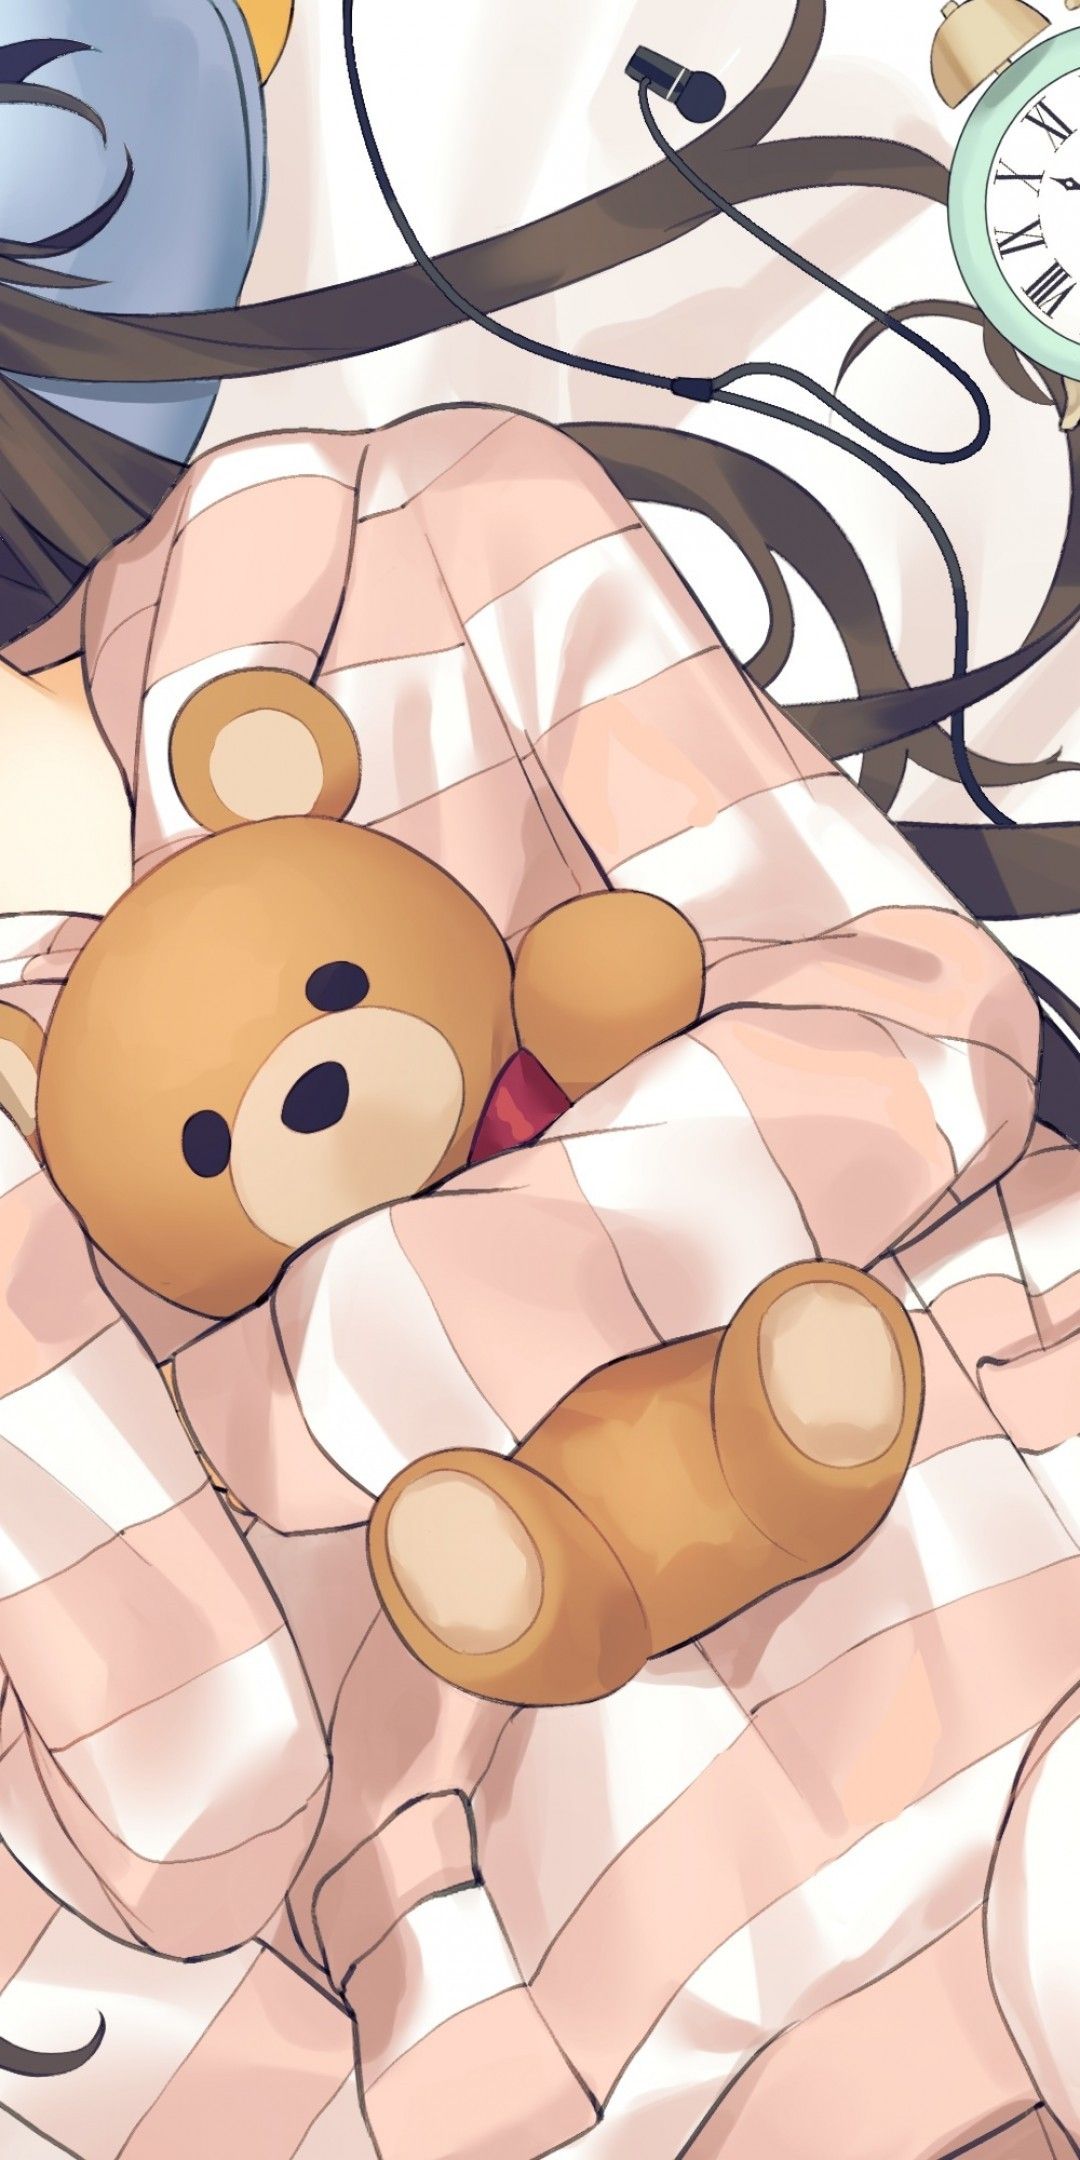 Cute anime girl with a teddy bear on Craiyon-demhanvico.com.vn